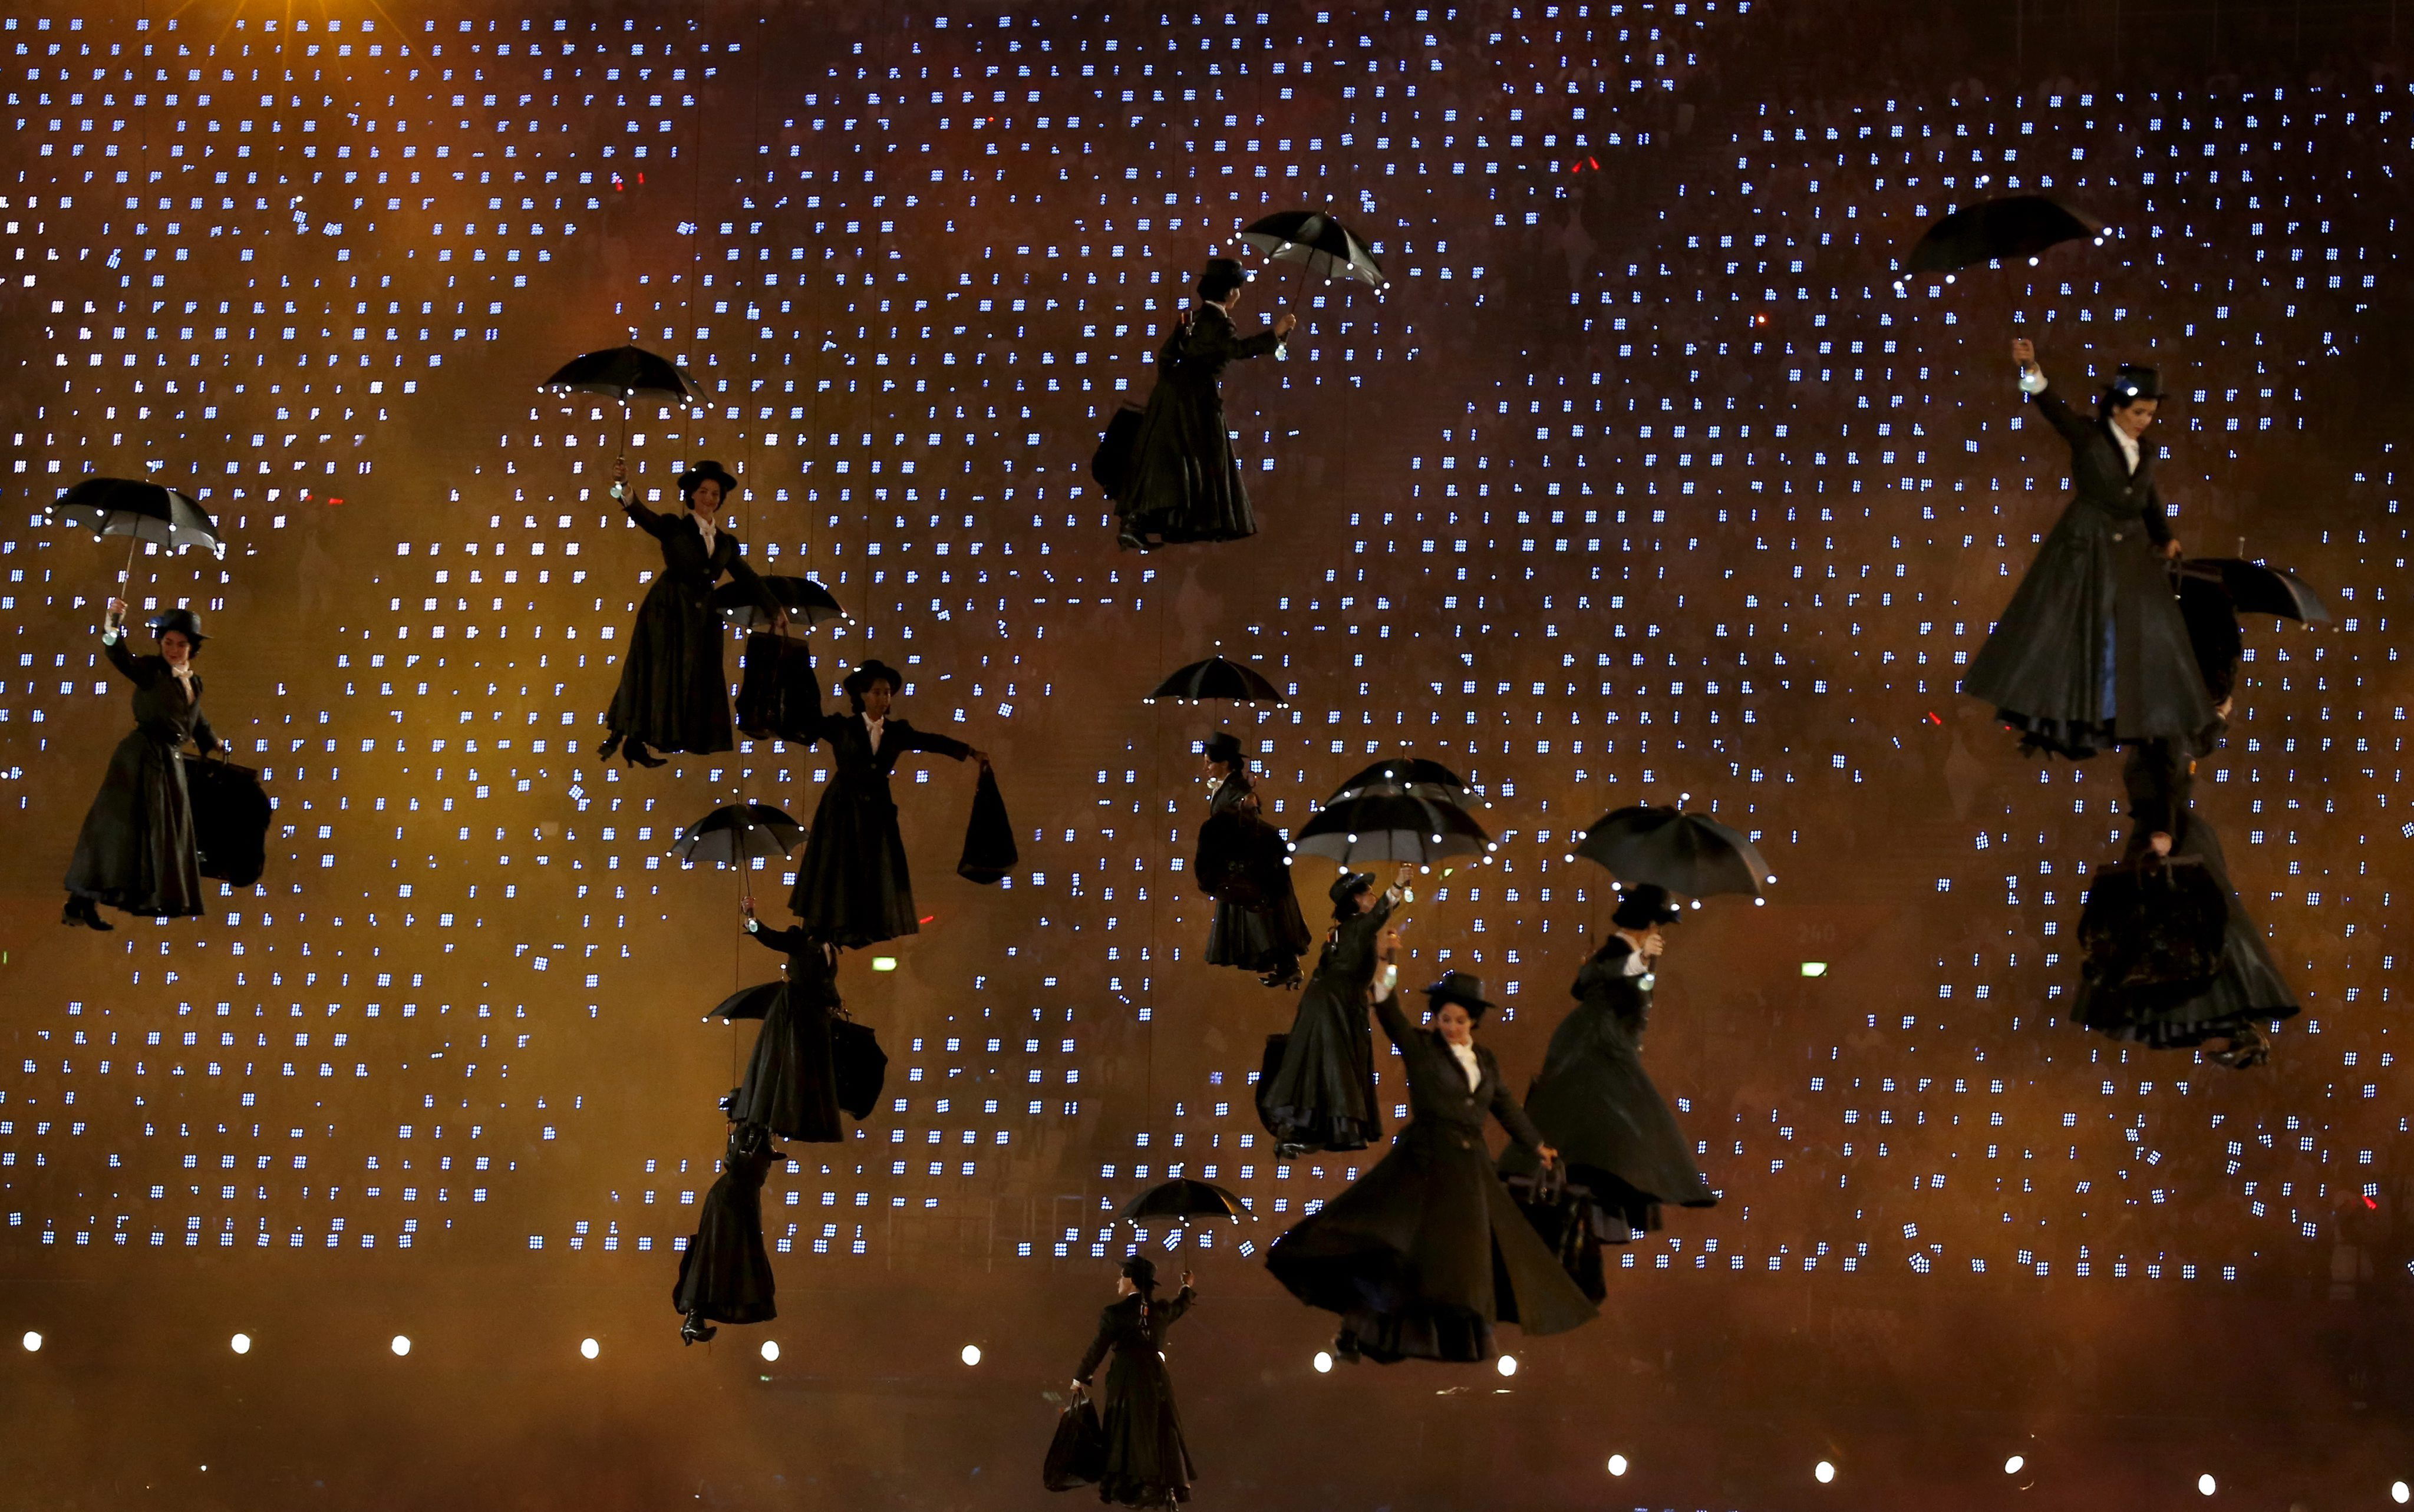 Fotografía de archivo fechada el 27 de julio de 2012 que muestra a un grupo de actrices que representan un número dedicado al filme "Mary Poppins" en la inauguración de los Juegos Olímpicos de Londres 2012, en el estadio Olímpico de Londres, en Reino Unido. (Foto Prensa Libre: EFE/ Jonathan Brady ARCHIVO)